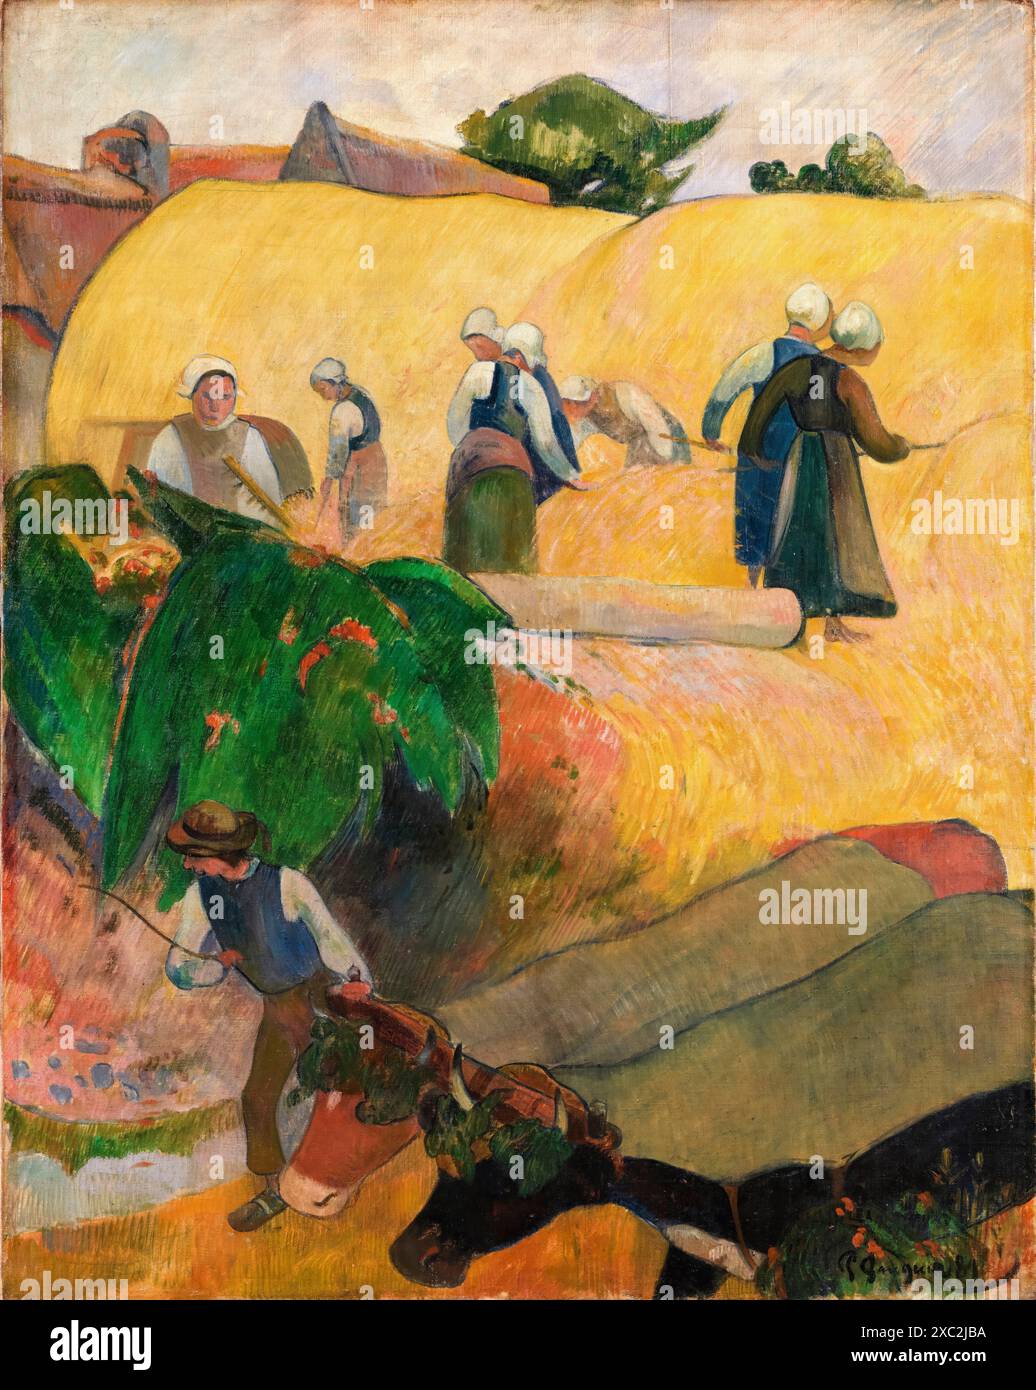 Paul Gauguin, les Haystacks, peinture à l'huile sur toile, 1889 Banque D'Images